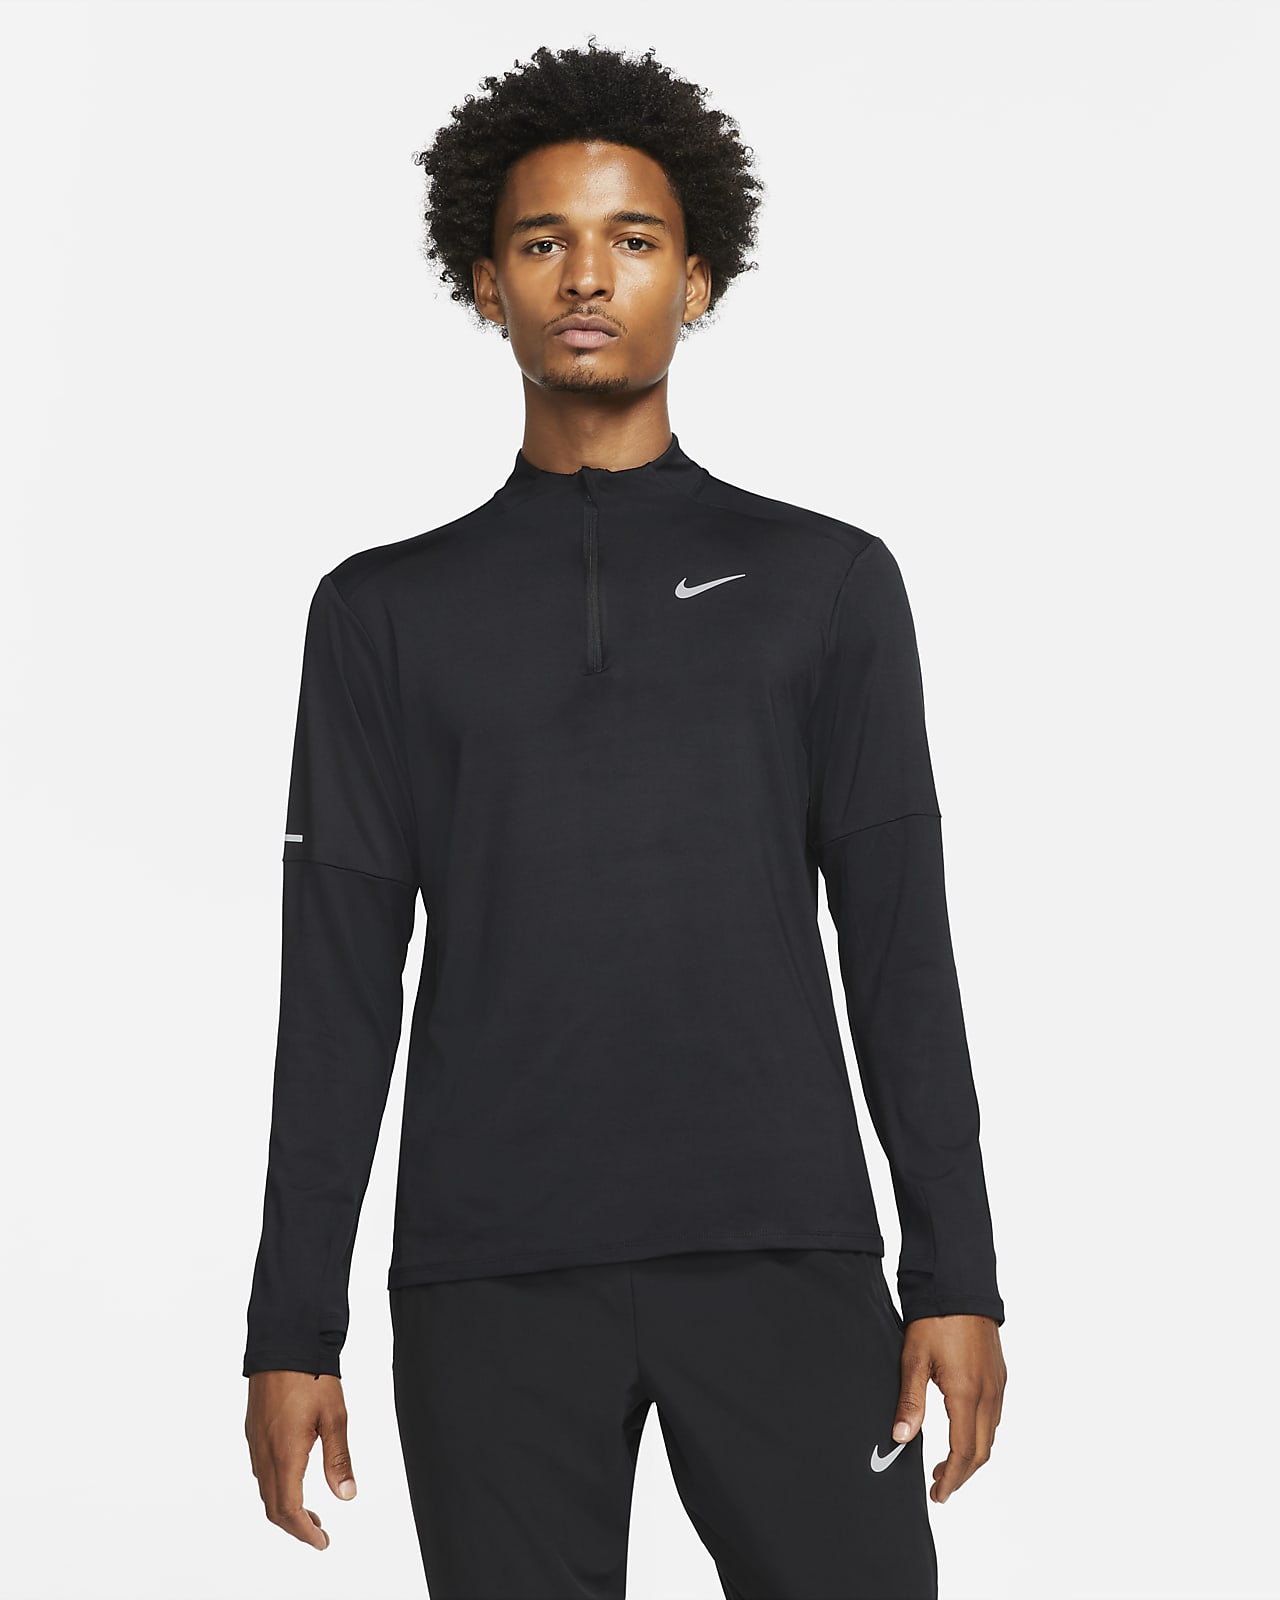 Black Nike Running Swoosh 1/4 Zip Top